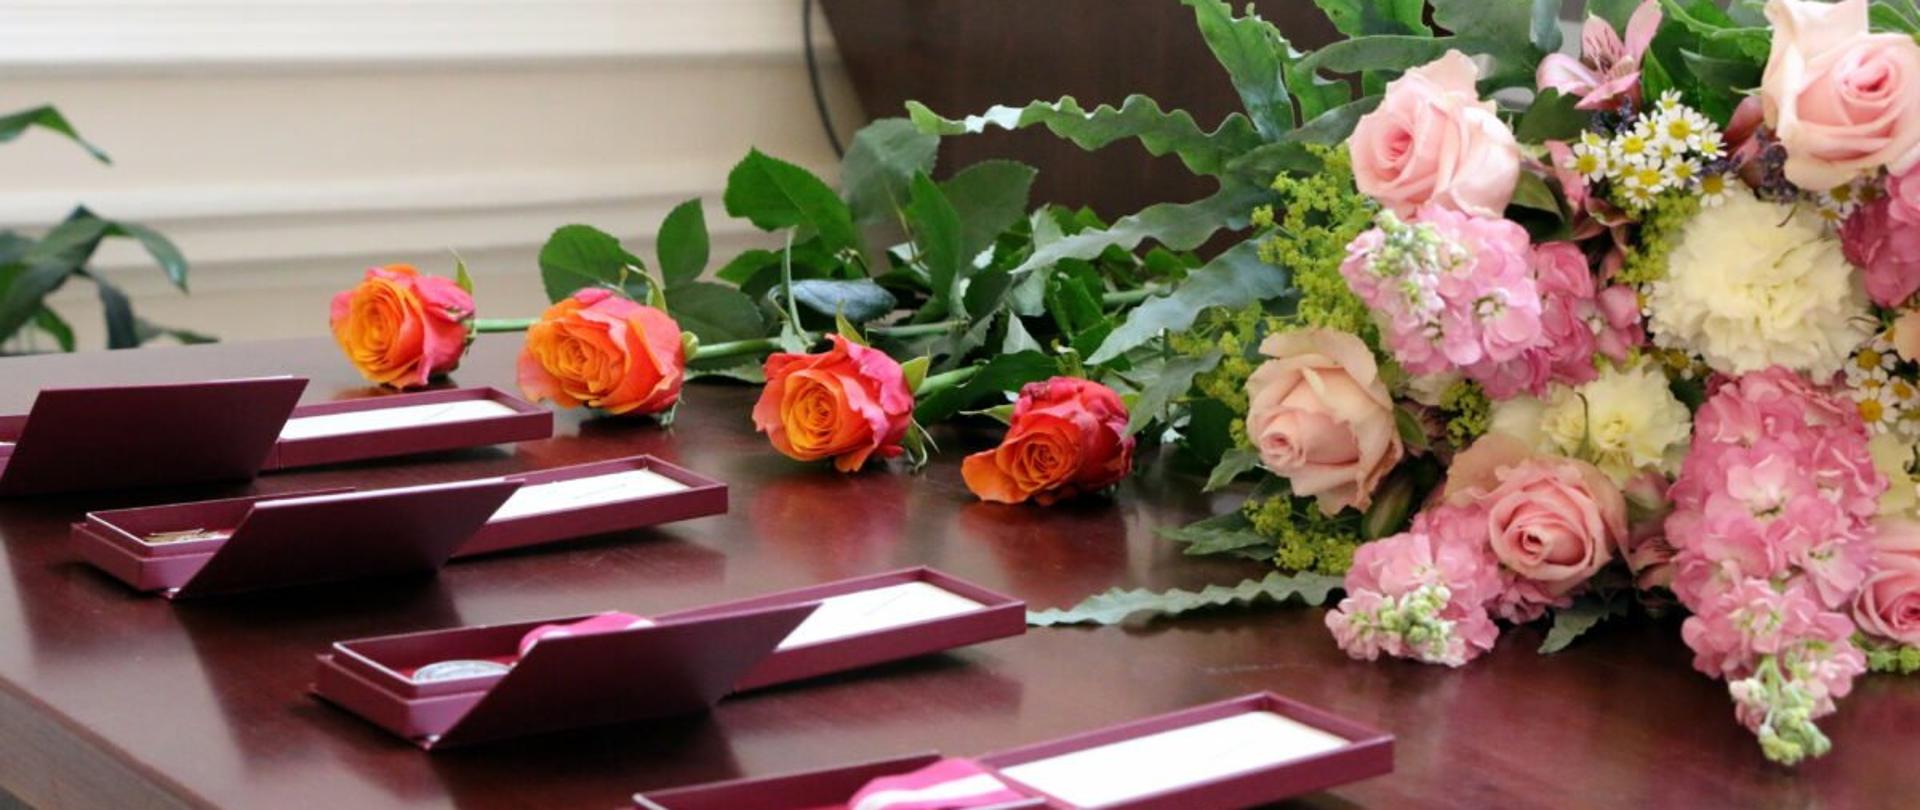 Na stole umieszczone odznaczenia państwowe w etui. Obok wiązanki kwiatów